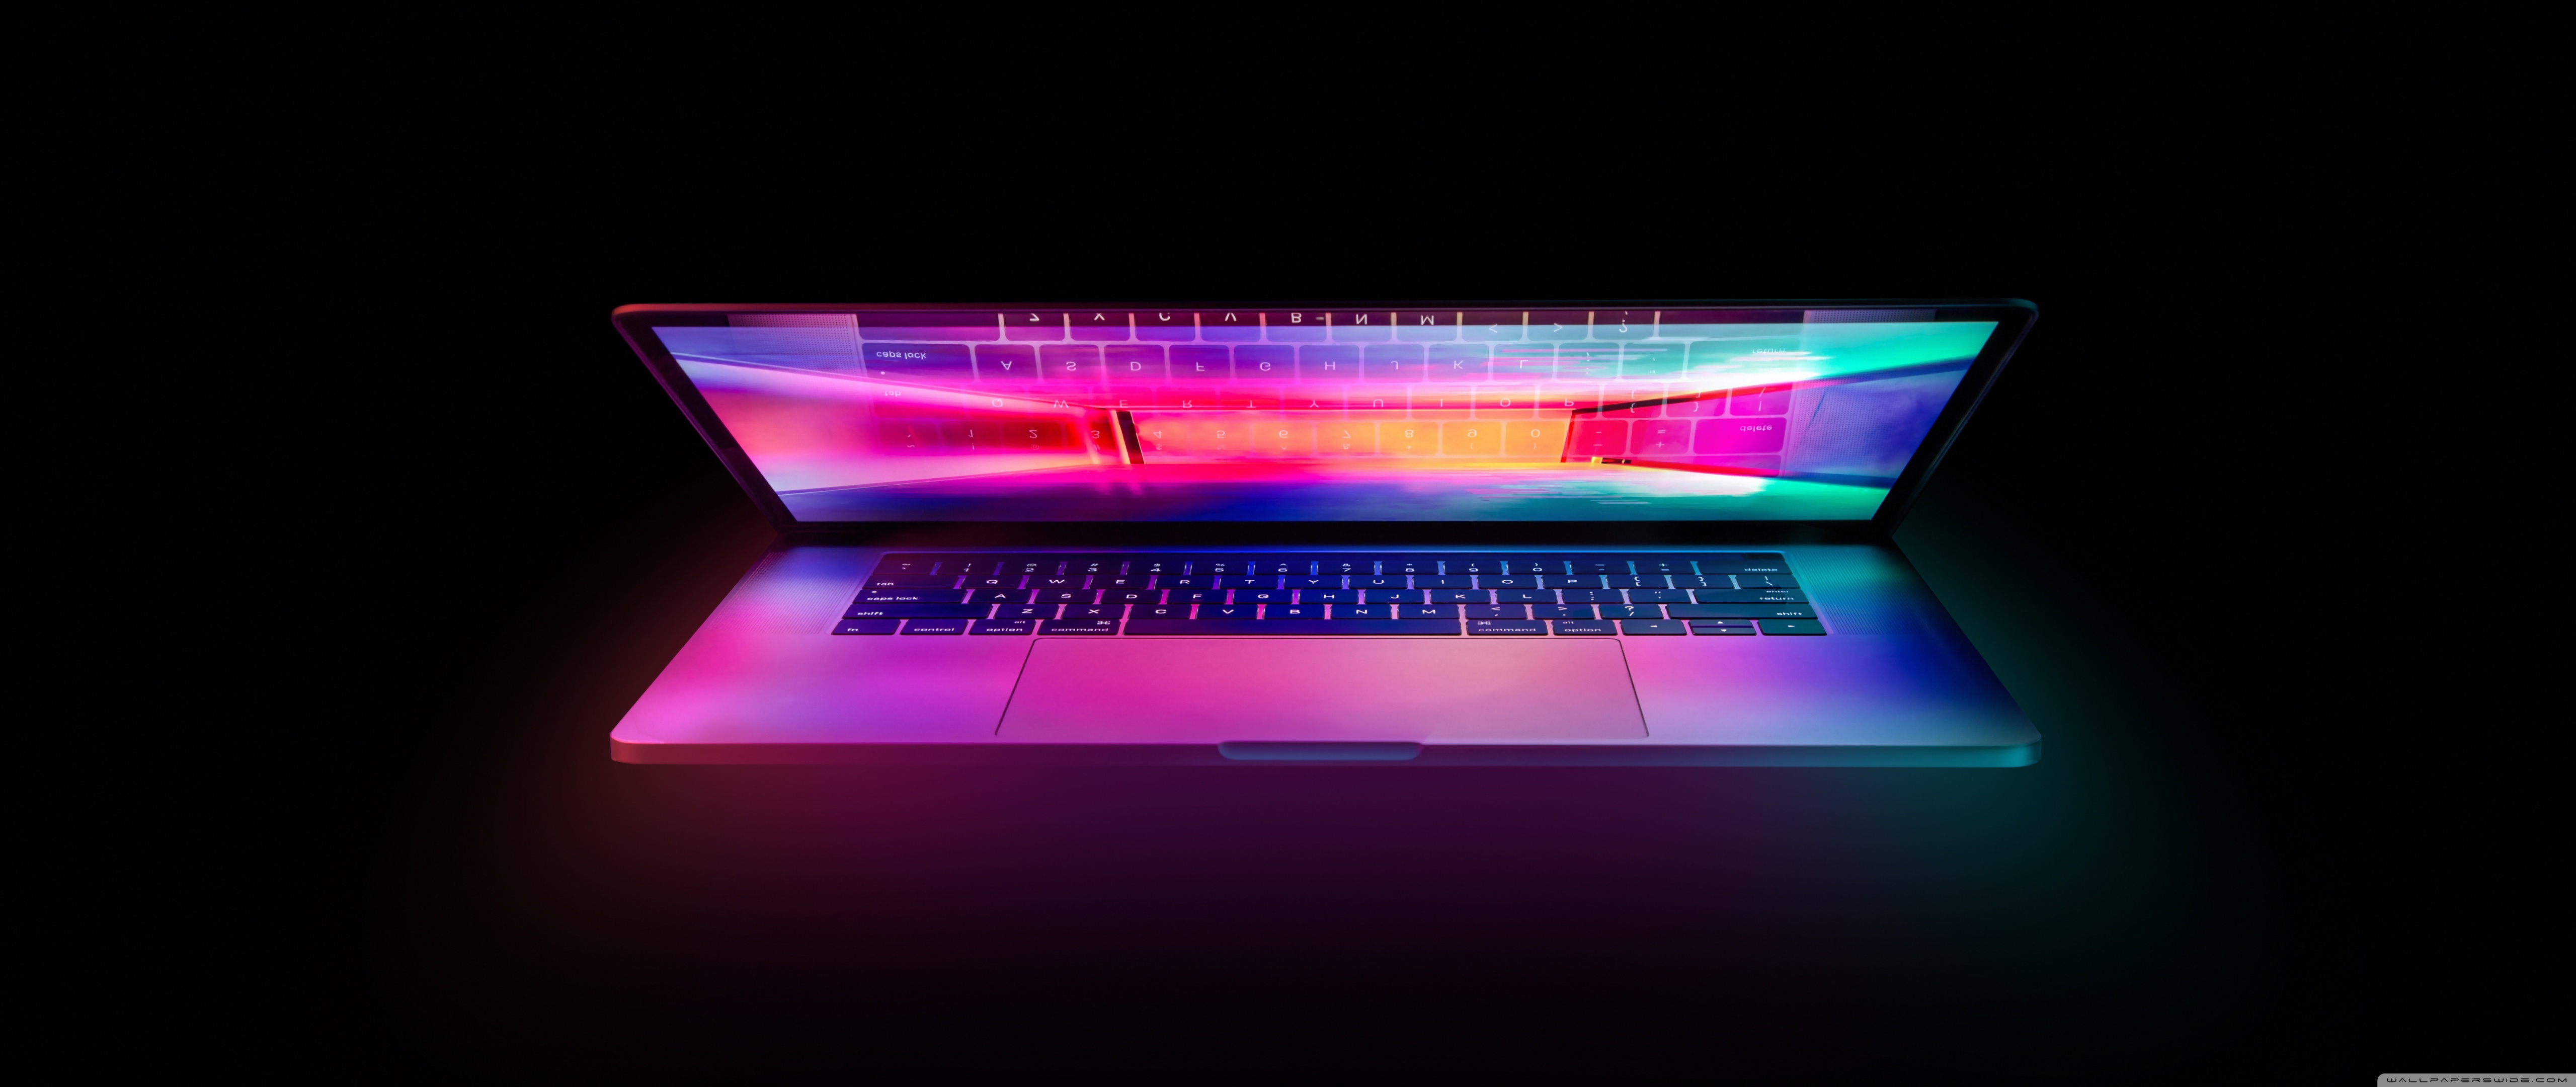 Keyboard Laptop Back Light - Free photo on Pixabay - Pixabay